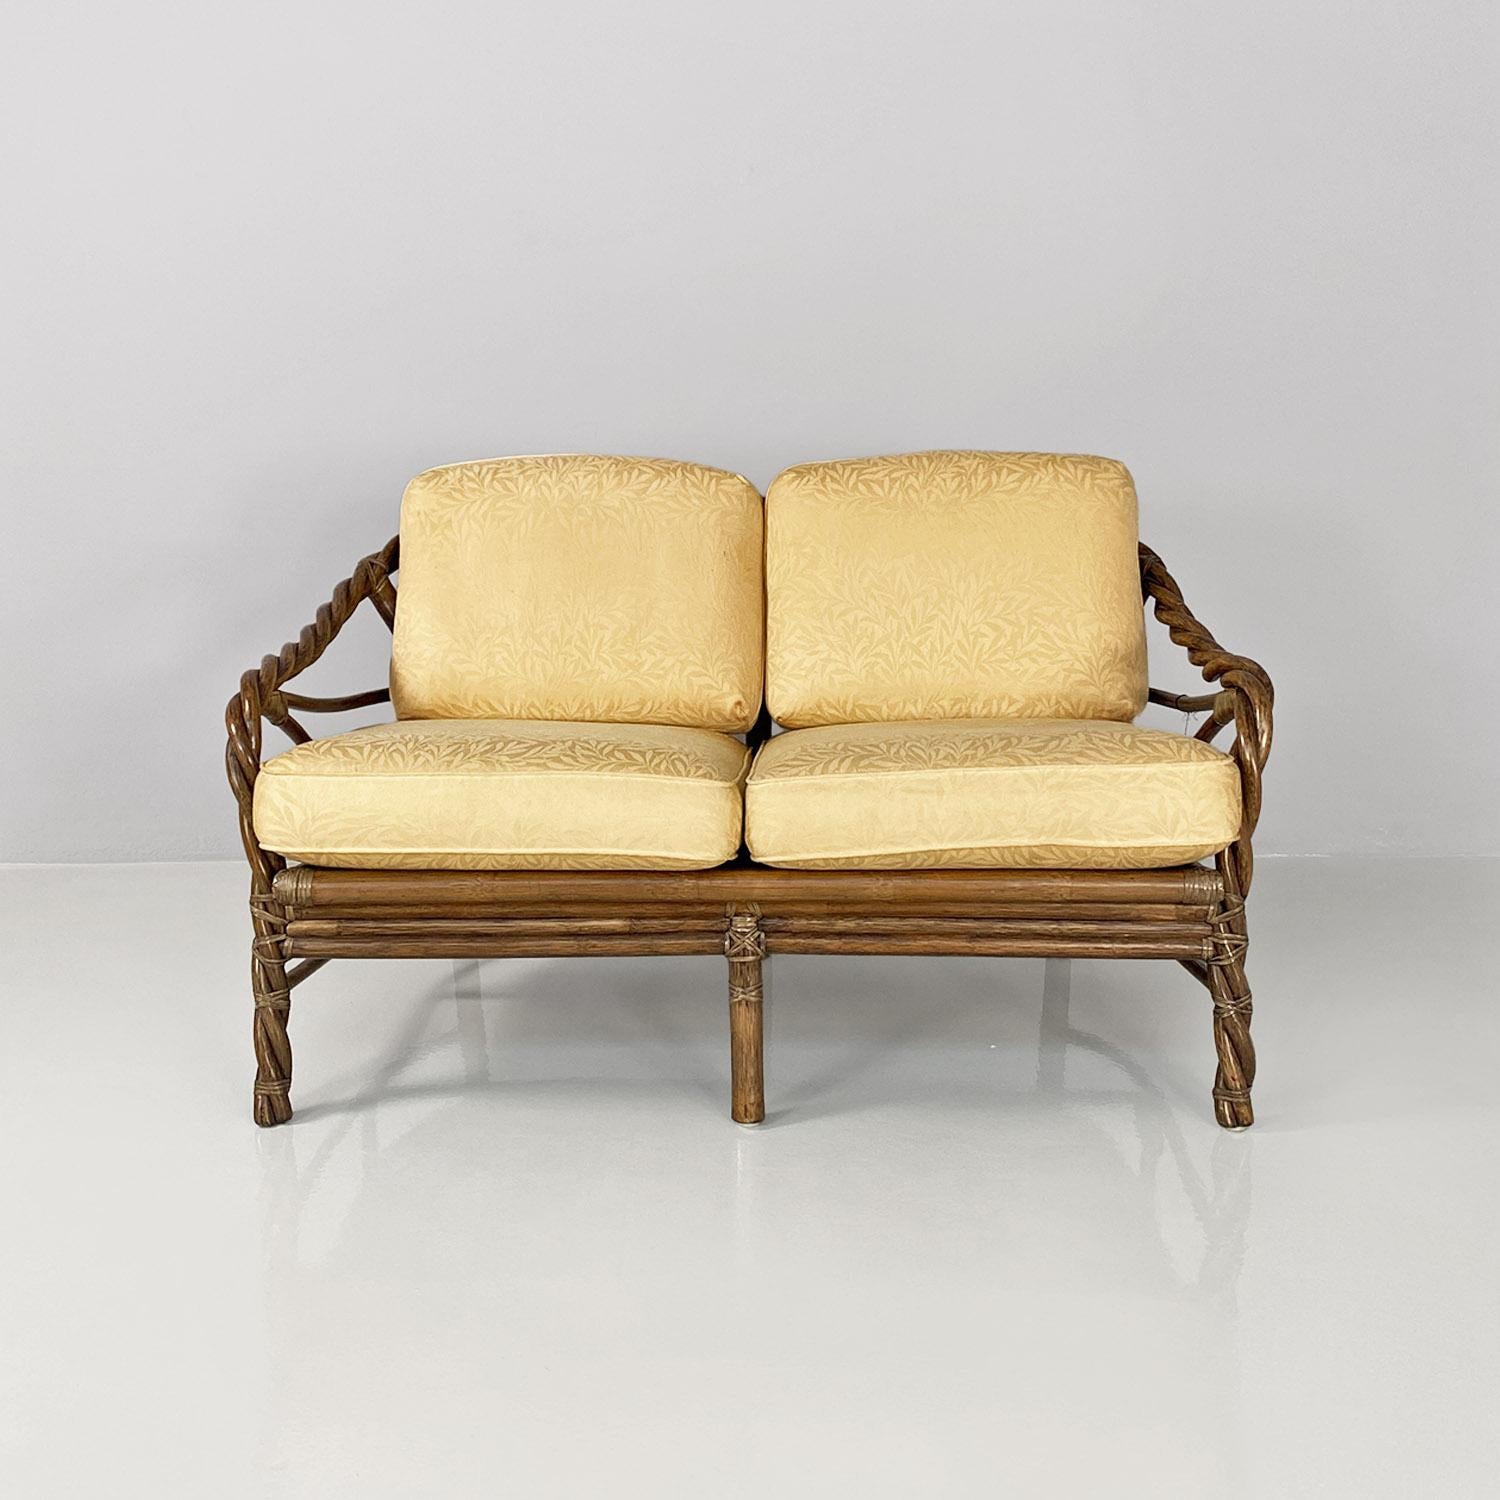 Canapé moderne américain en rotin et tissu floreal beige par McGuire Company, années 1970.
Canapé deux places avec assise rectangulaire en rotin tressé avec lacets en cuir, avec accoudoirs également en rotin tressé. Sur l'assise, comme sur le